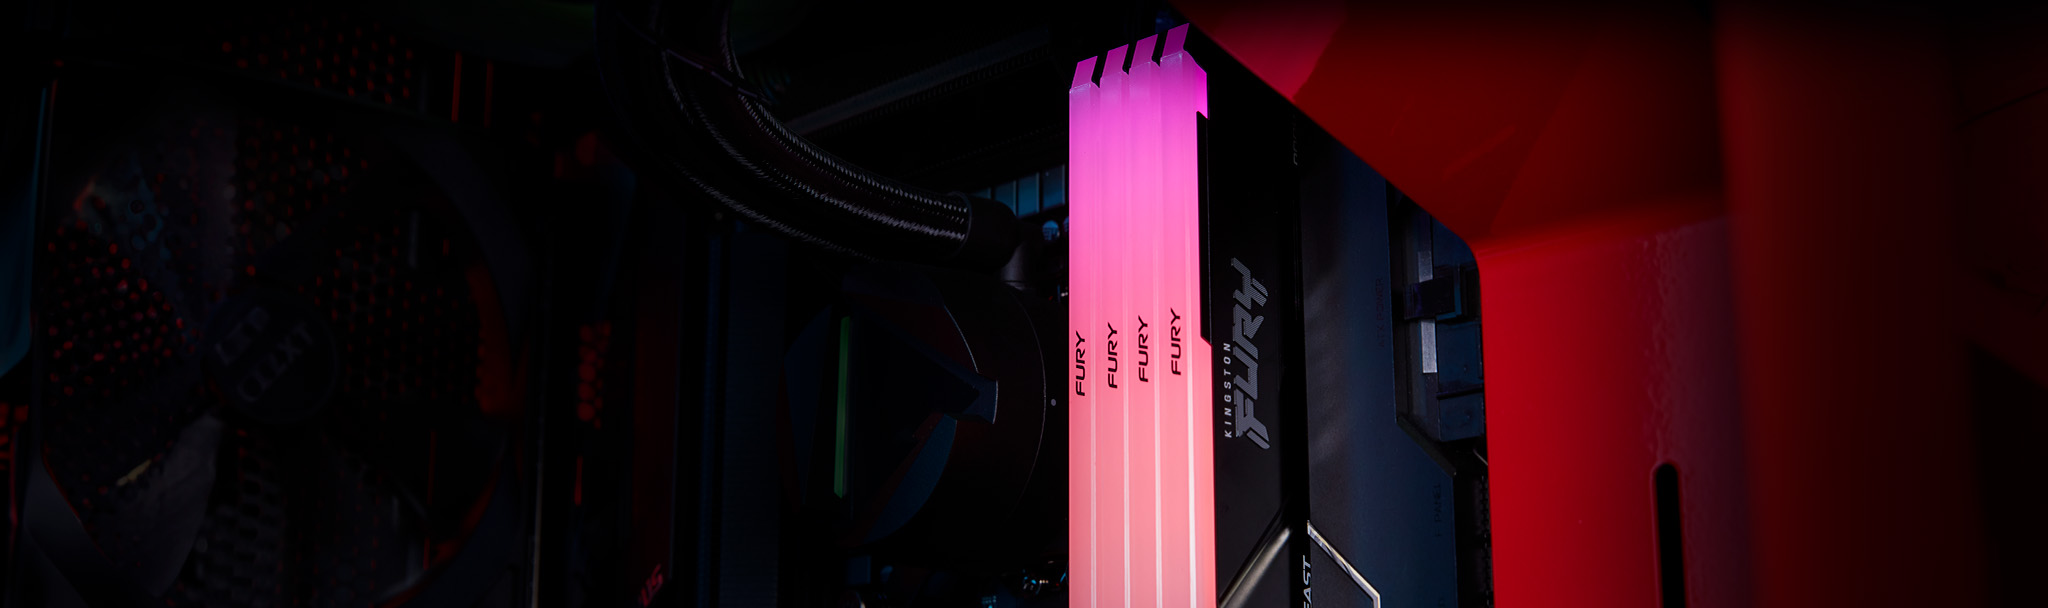 4 個 Kingston FURY Beast DDR4 RGB 模組在五彩繽紛的電腦機殼中發出洋紅色漸變光線效果。